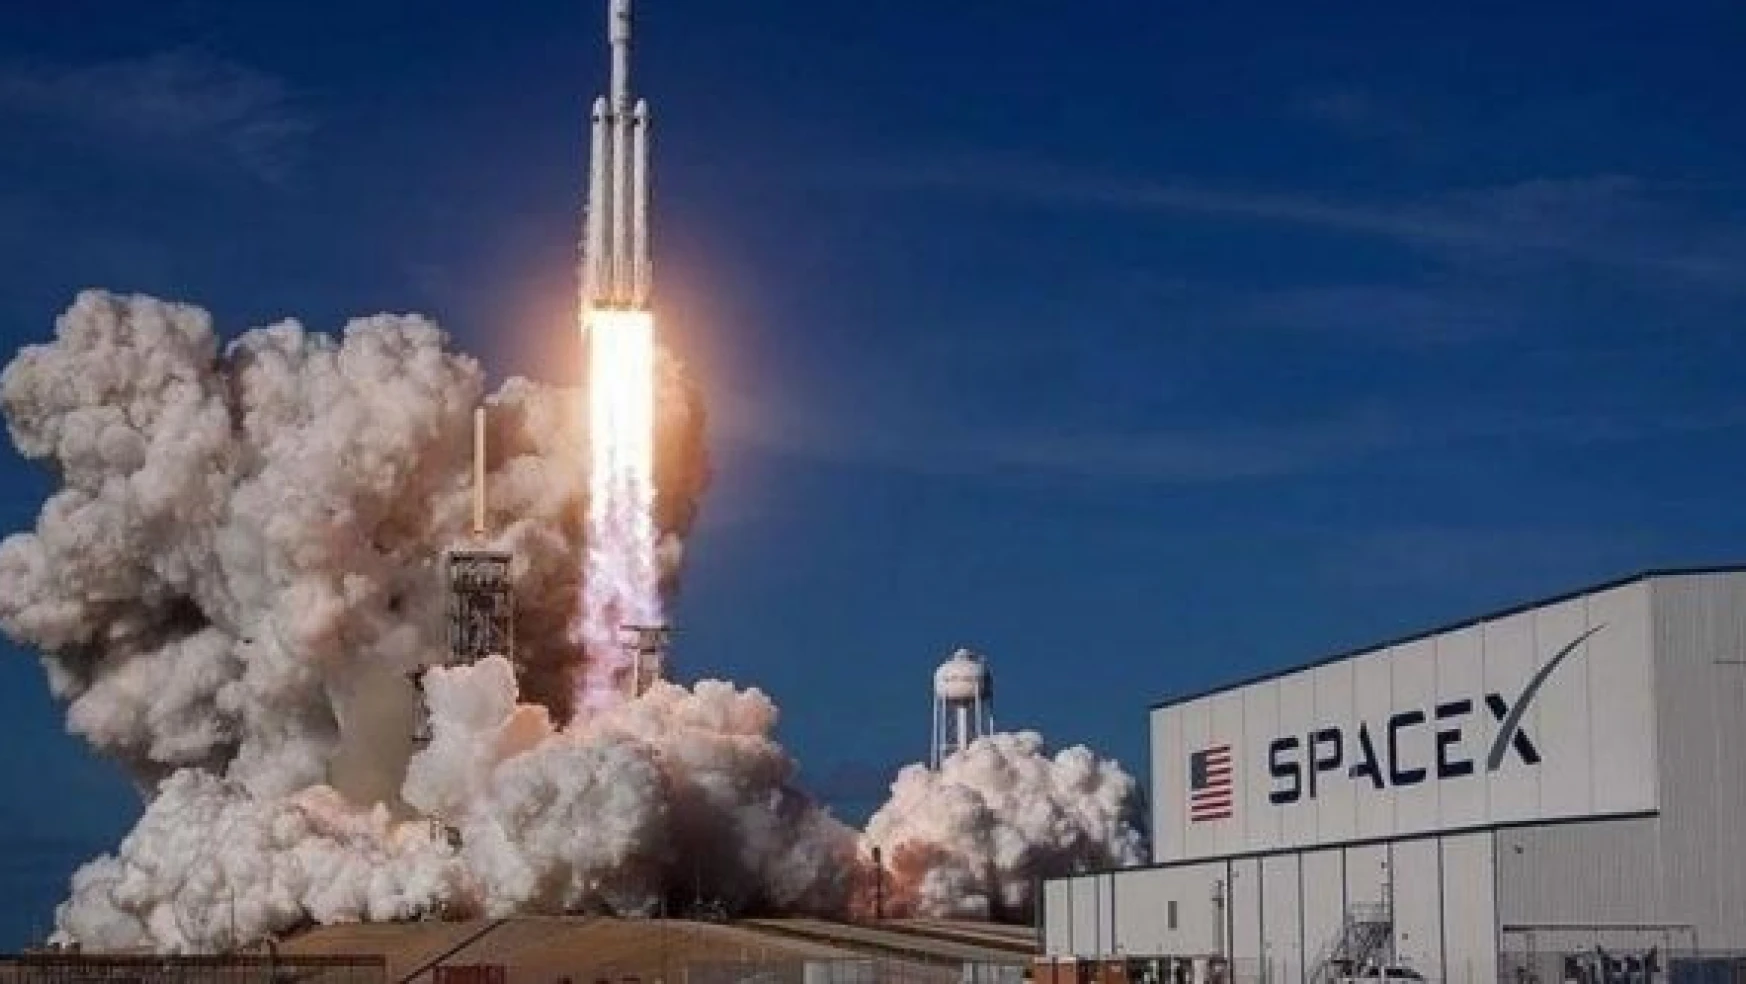 SpaceX roketi alev aldı!